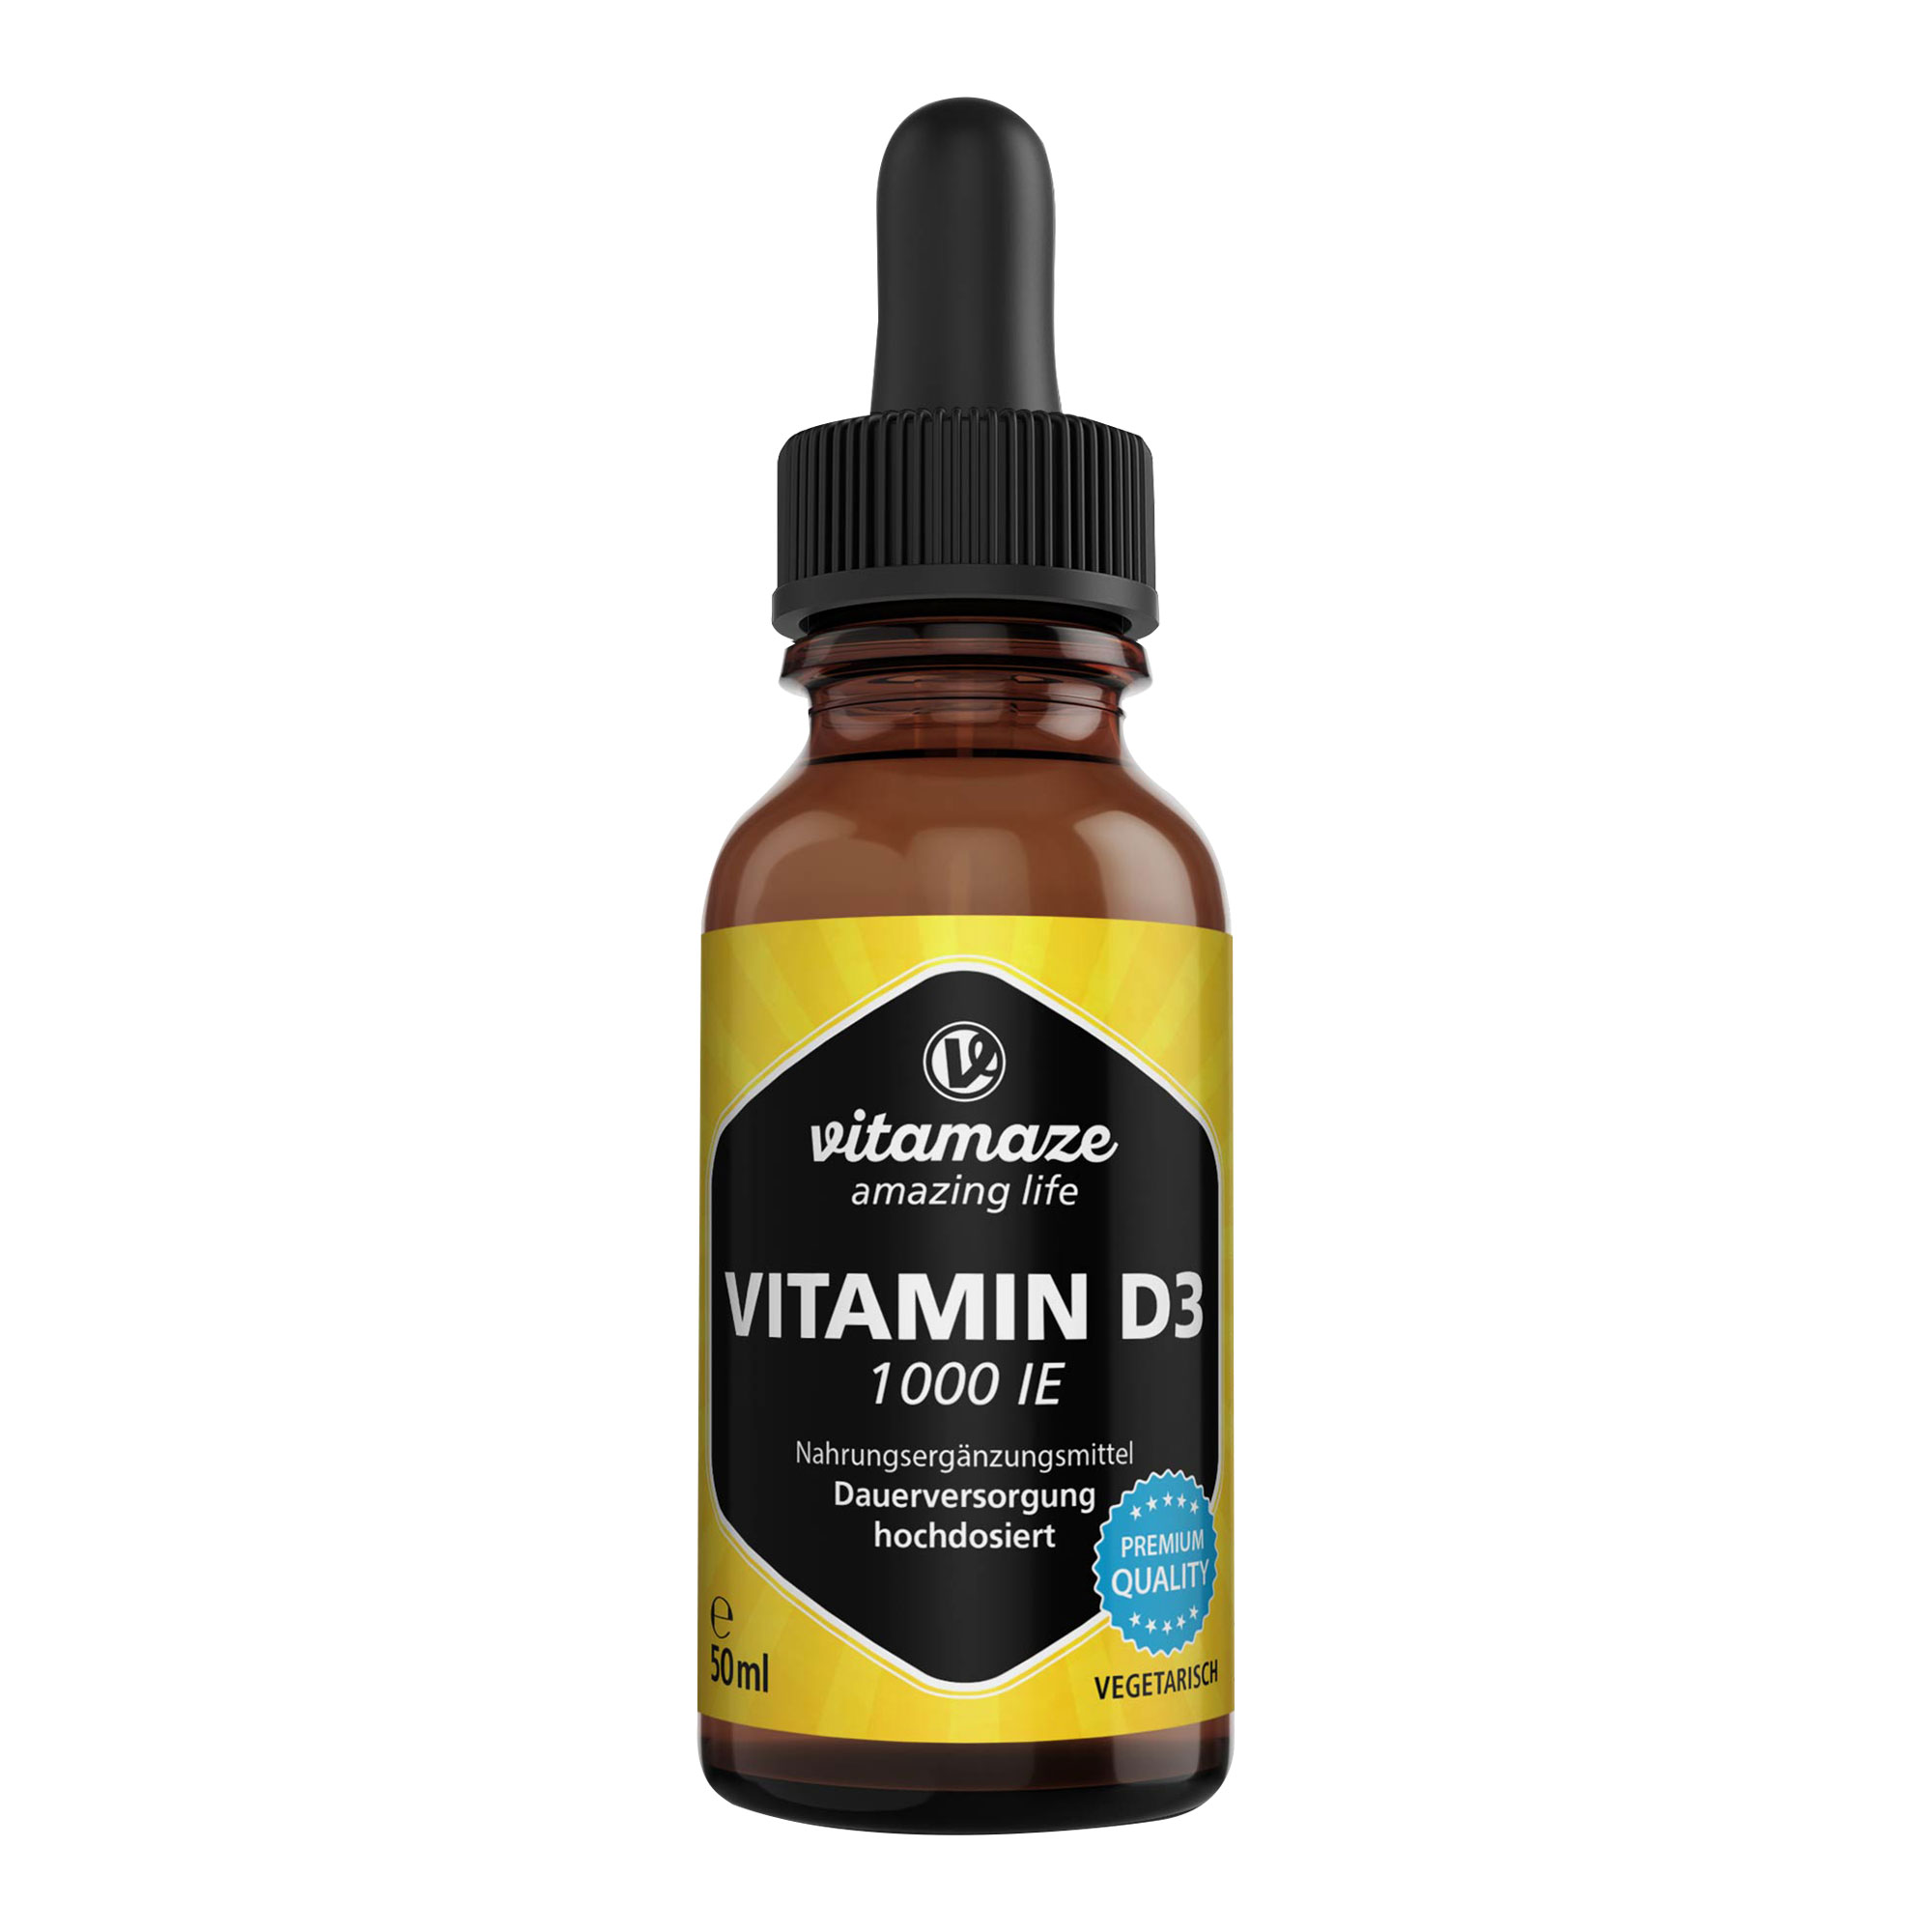 Nahrungsergänzungsmittel mit hochdosiertem Vitamin D3 in flüssiger Form.